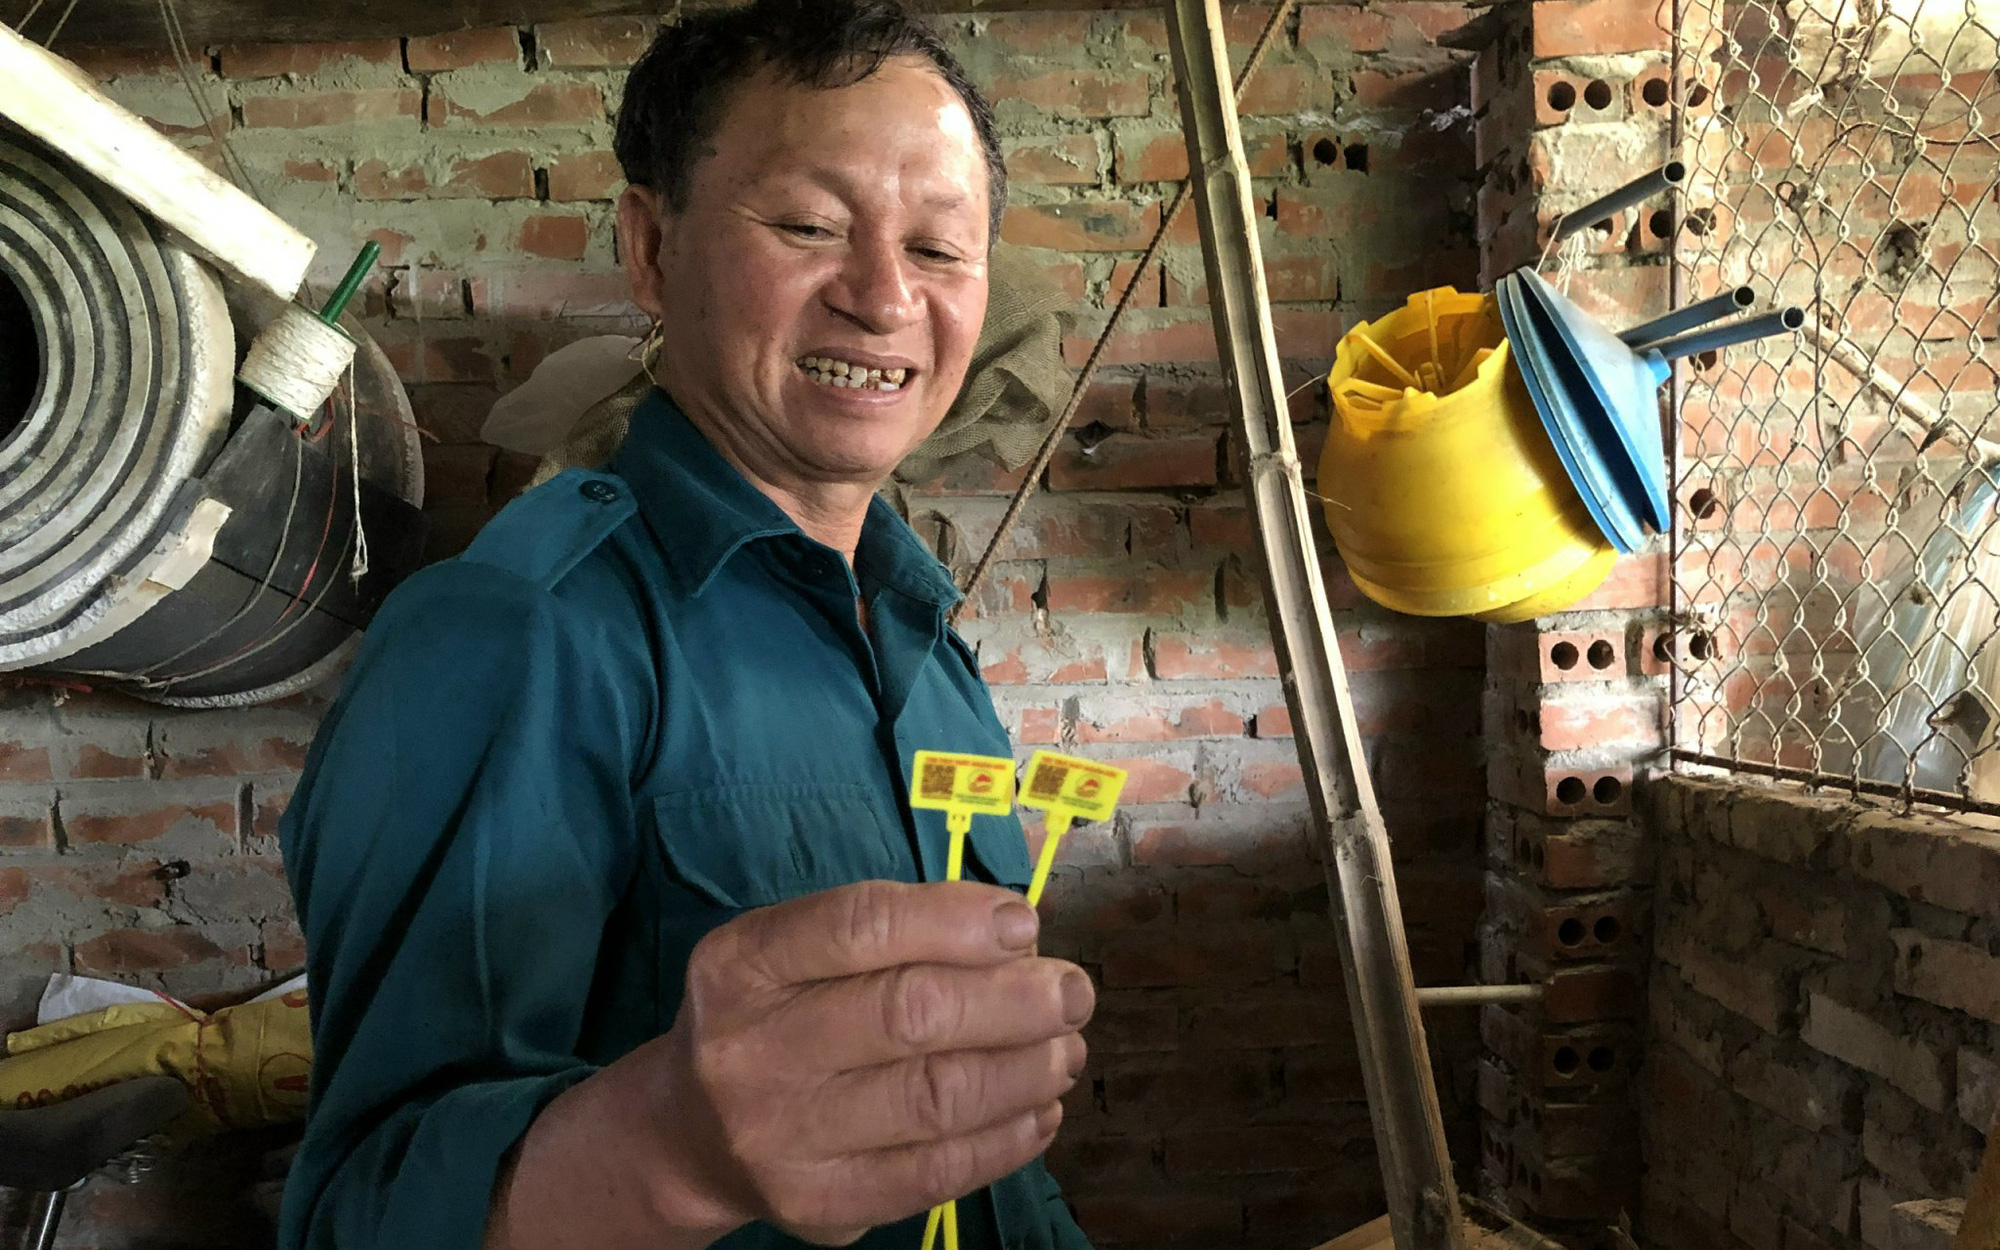 Nhận tem truy xuất thông minh, nông dân Bắc Ninh được "chia chác" 12 triệu đồng tiền mặt